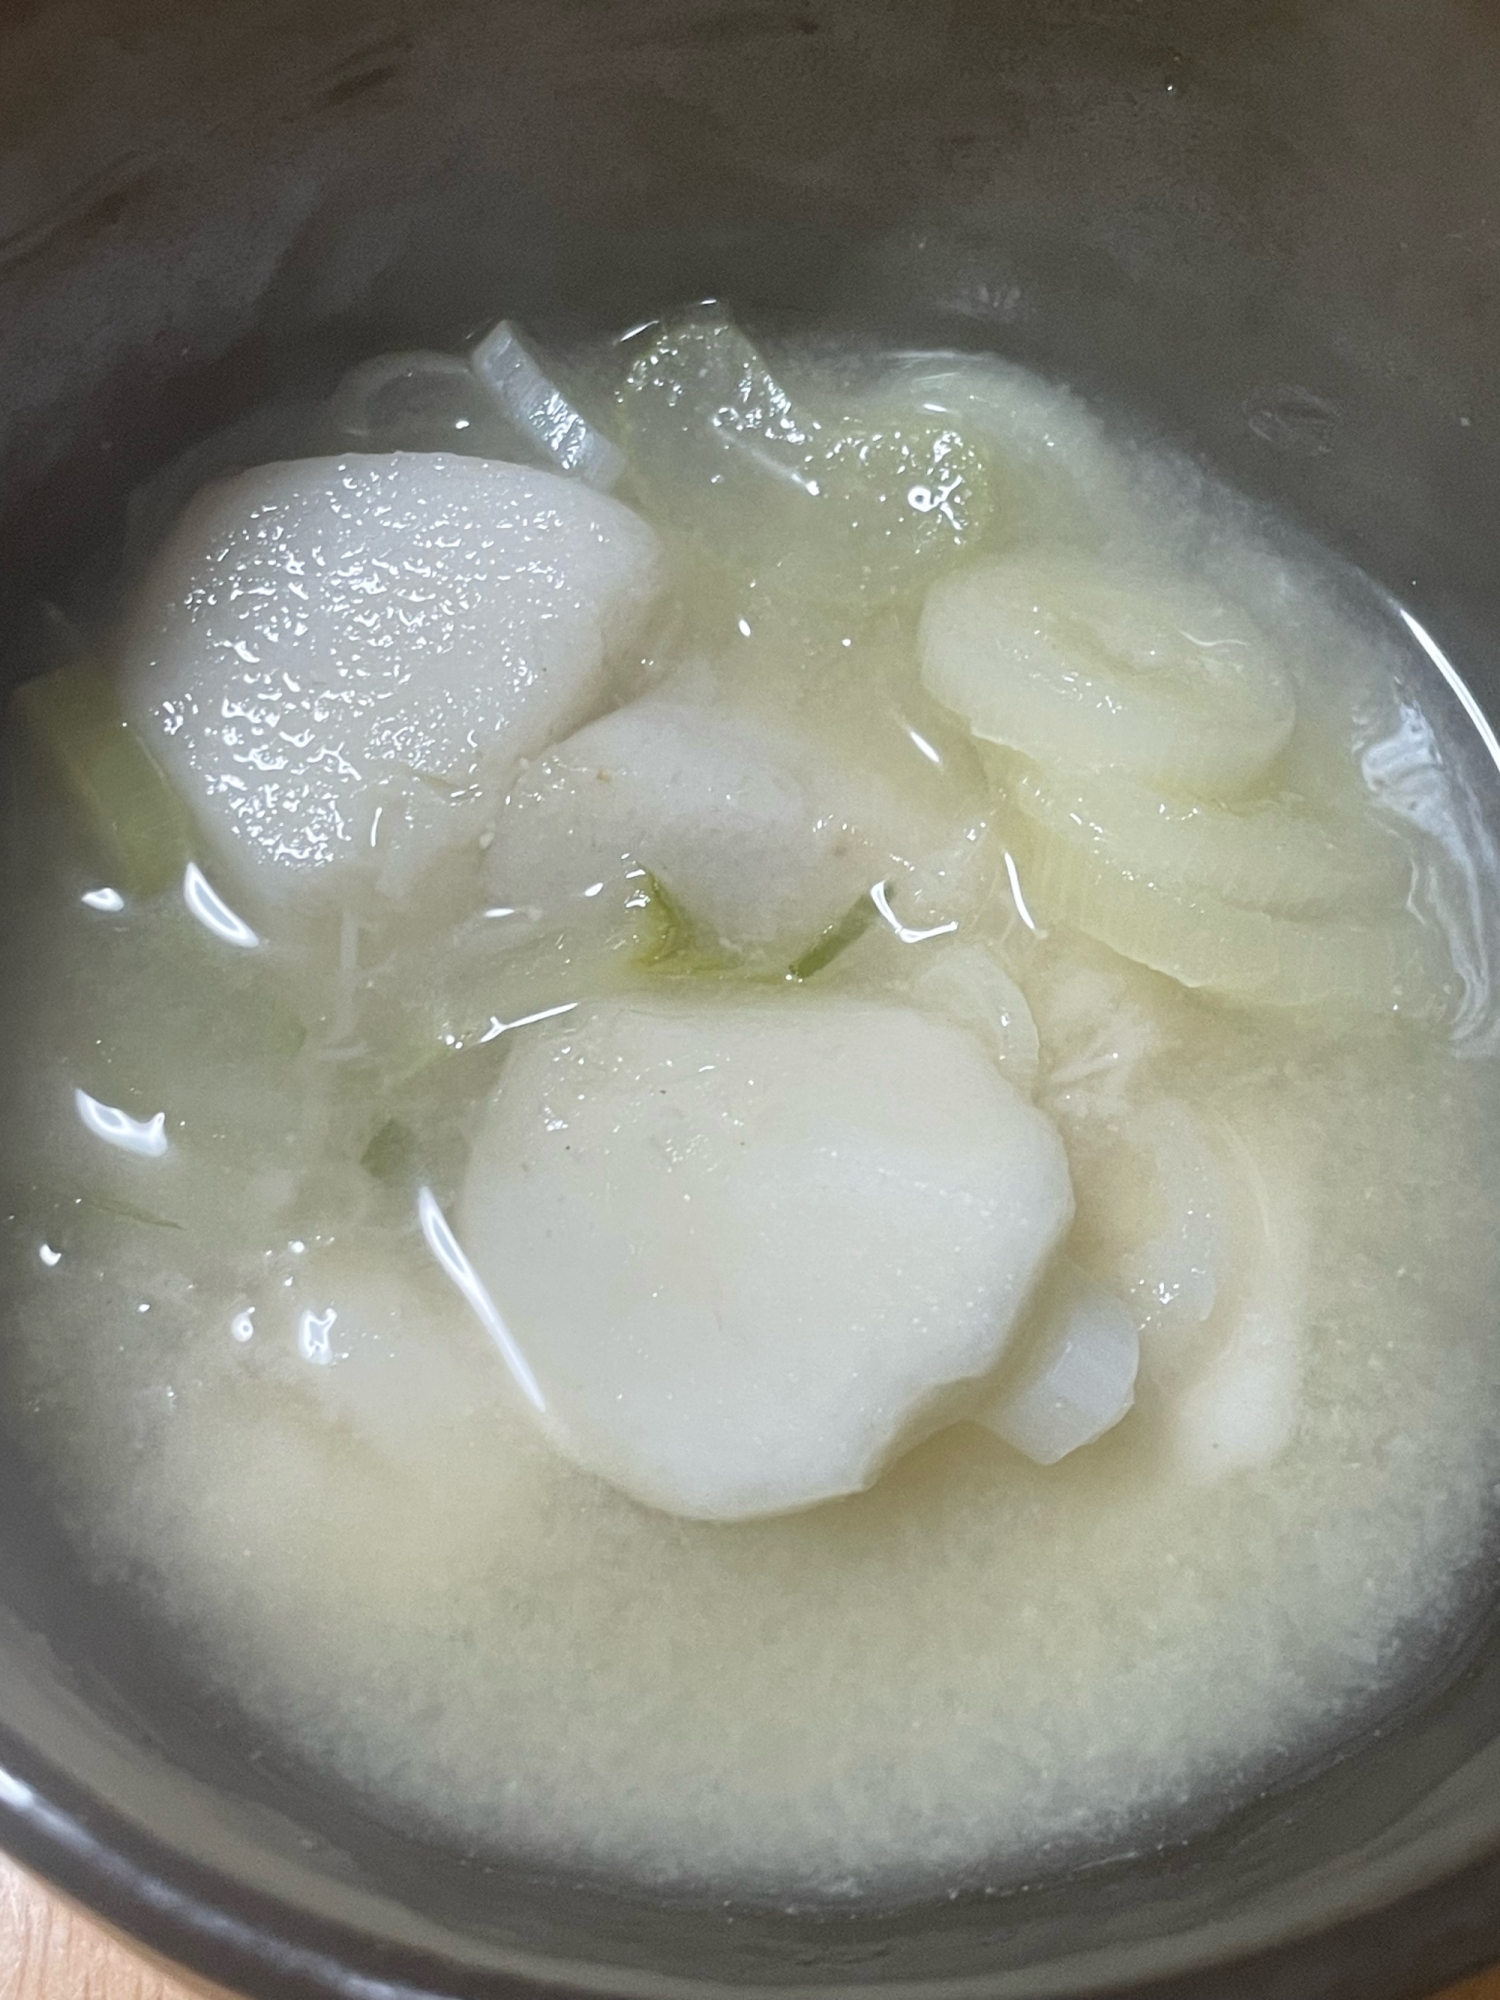 冷凍里芋の味噌汁